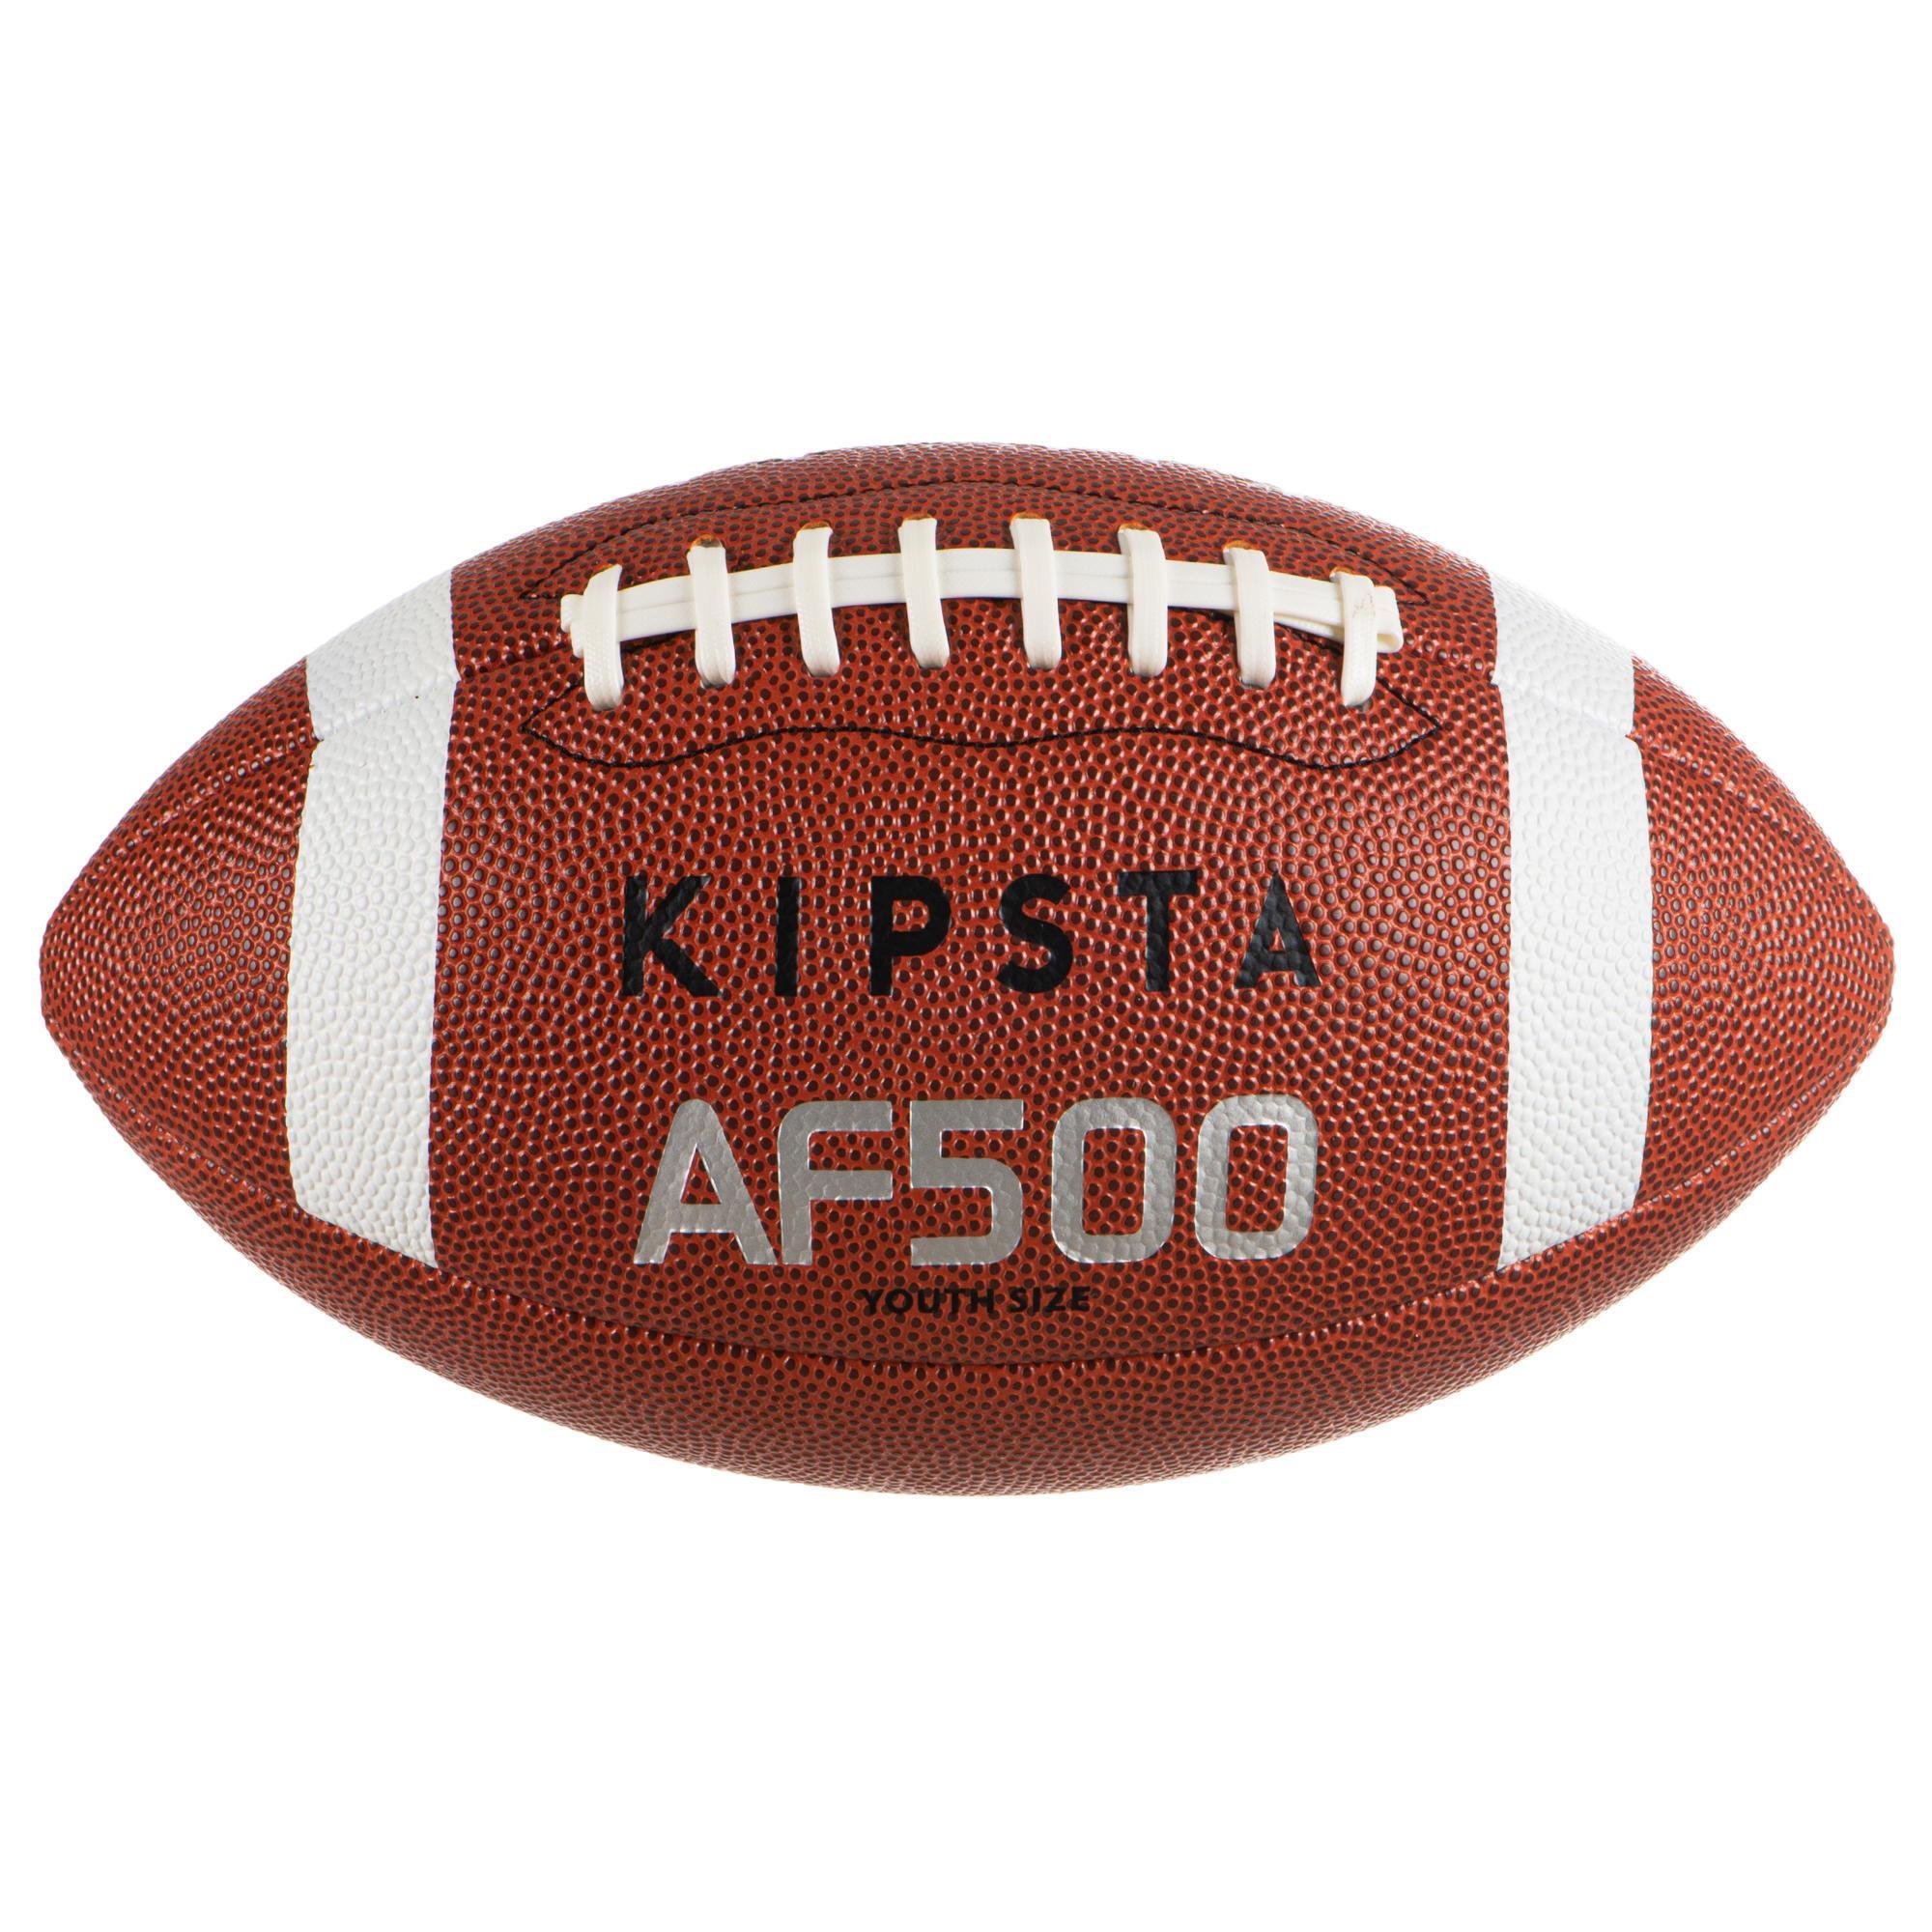 Zdjęcia - Pozostałe akcesoria Kipsta Piłka do futbolu amerykańskiego  AF 500 rozmiar Youth Młodzieżowy 